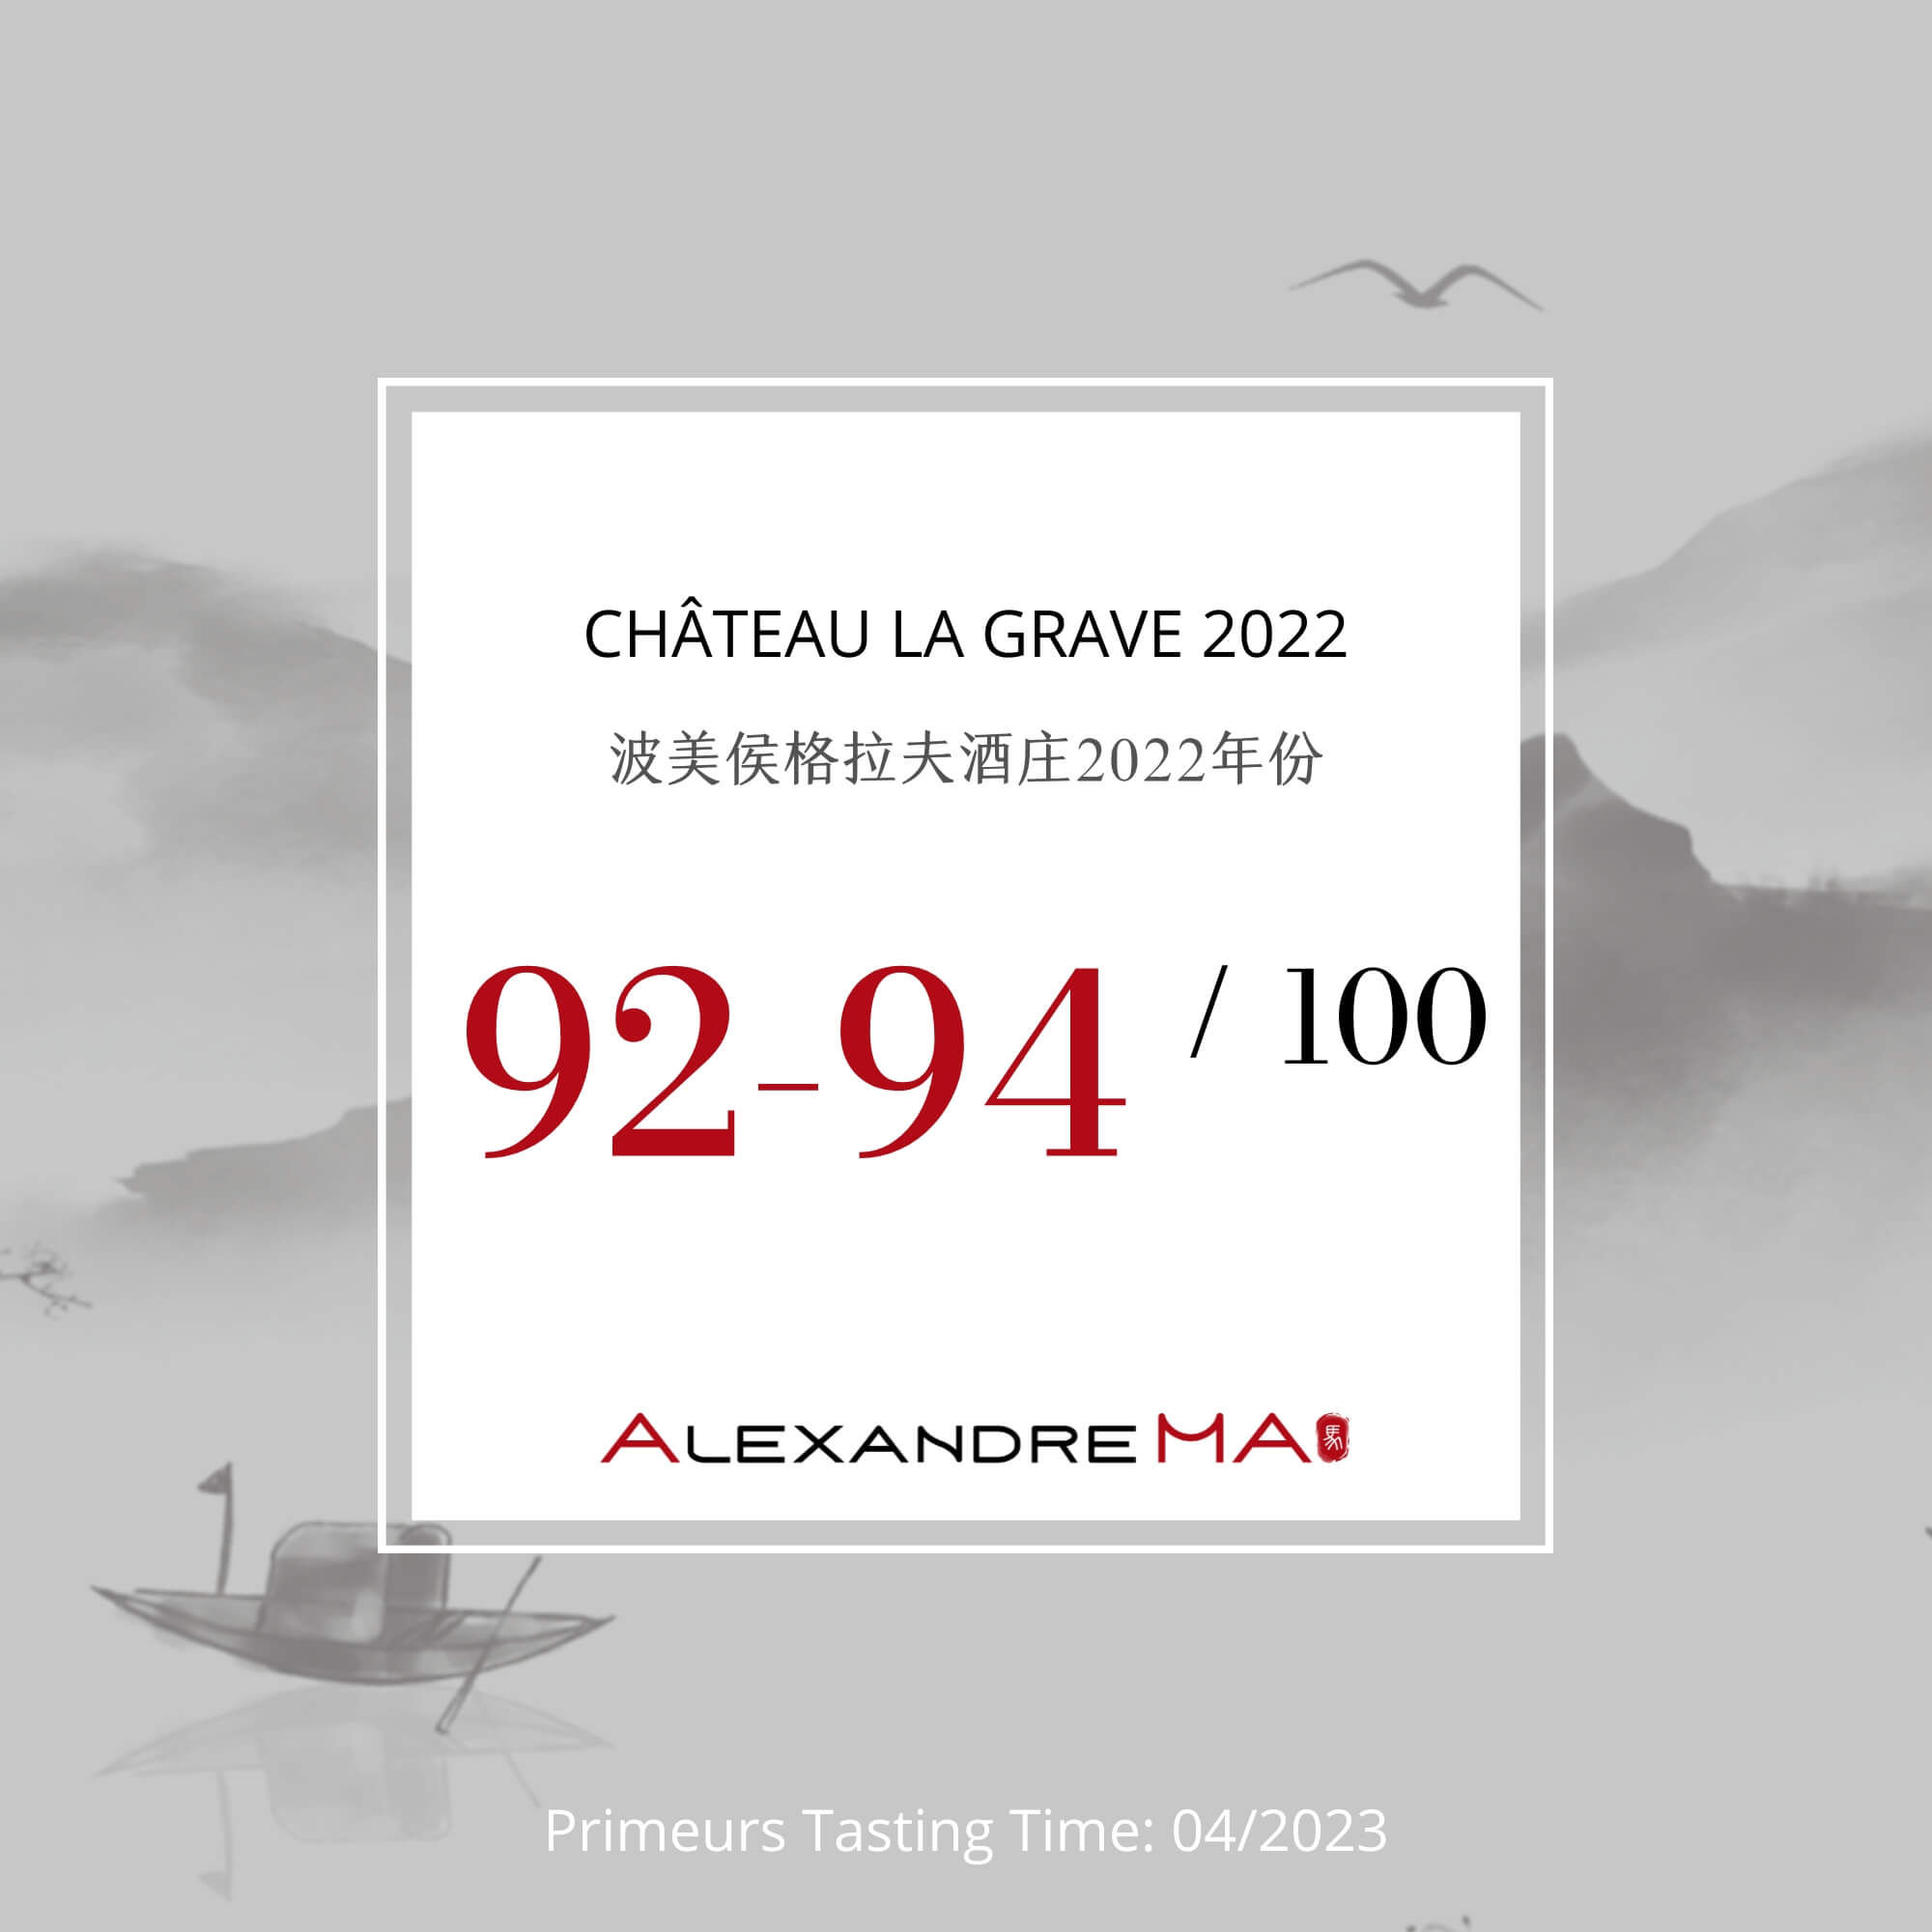 Château La Grave 2022 Primeurs - Alexandre MA